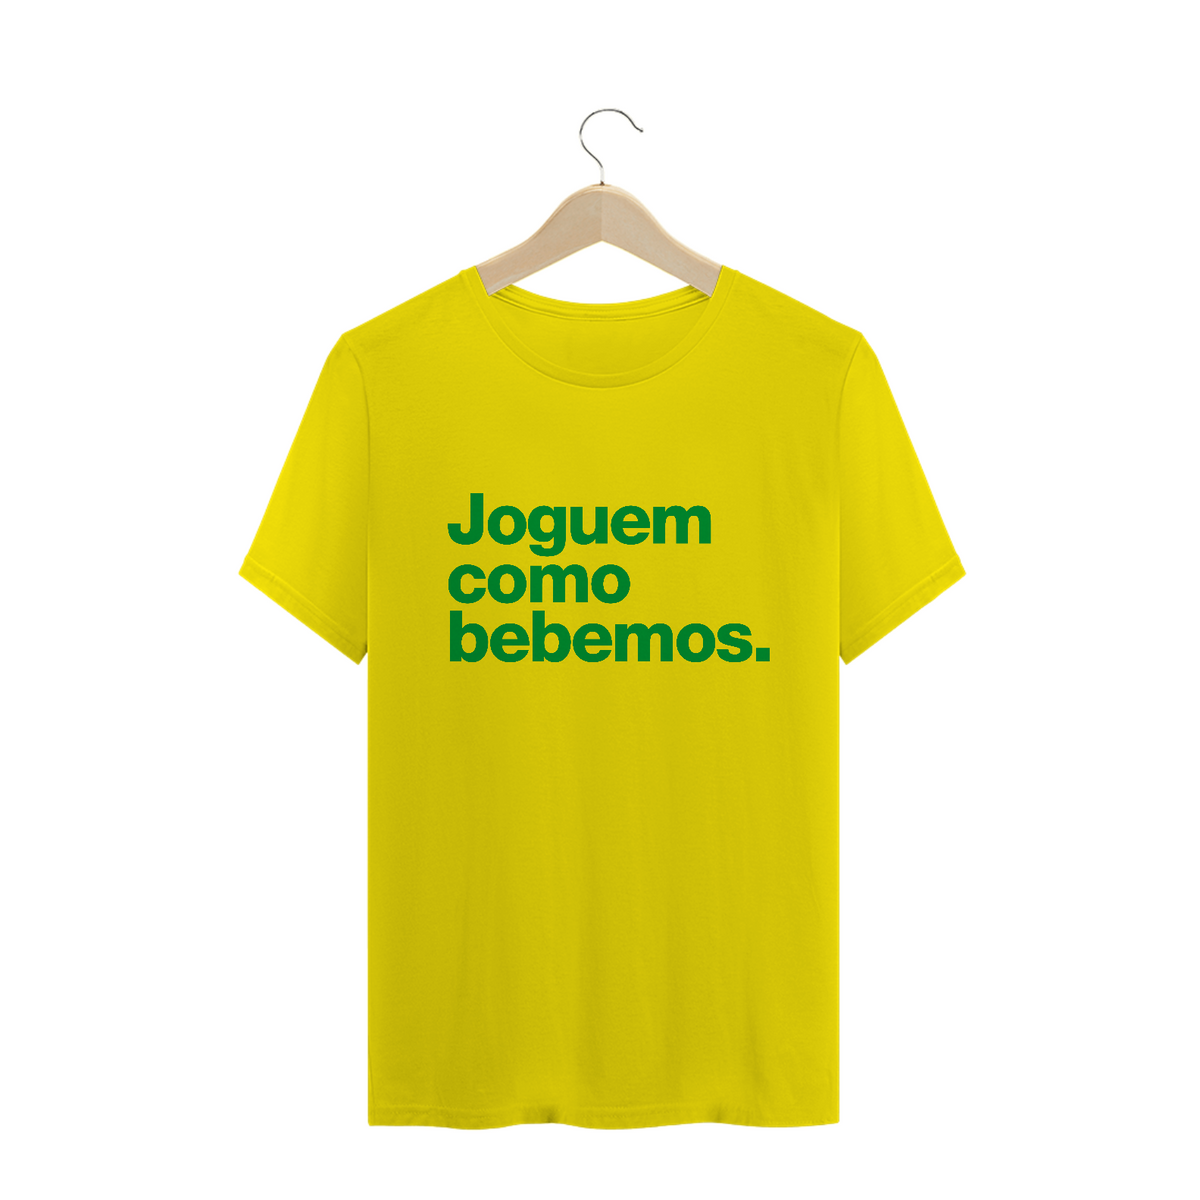 Nome do produto: Camiseta Brasil - Joguem como bebemos - Amarela